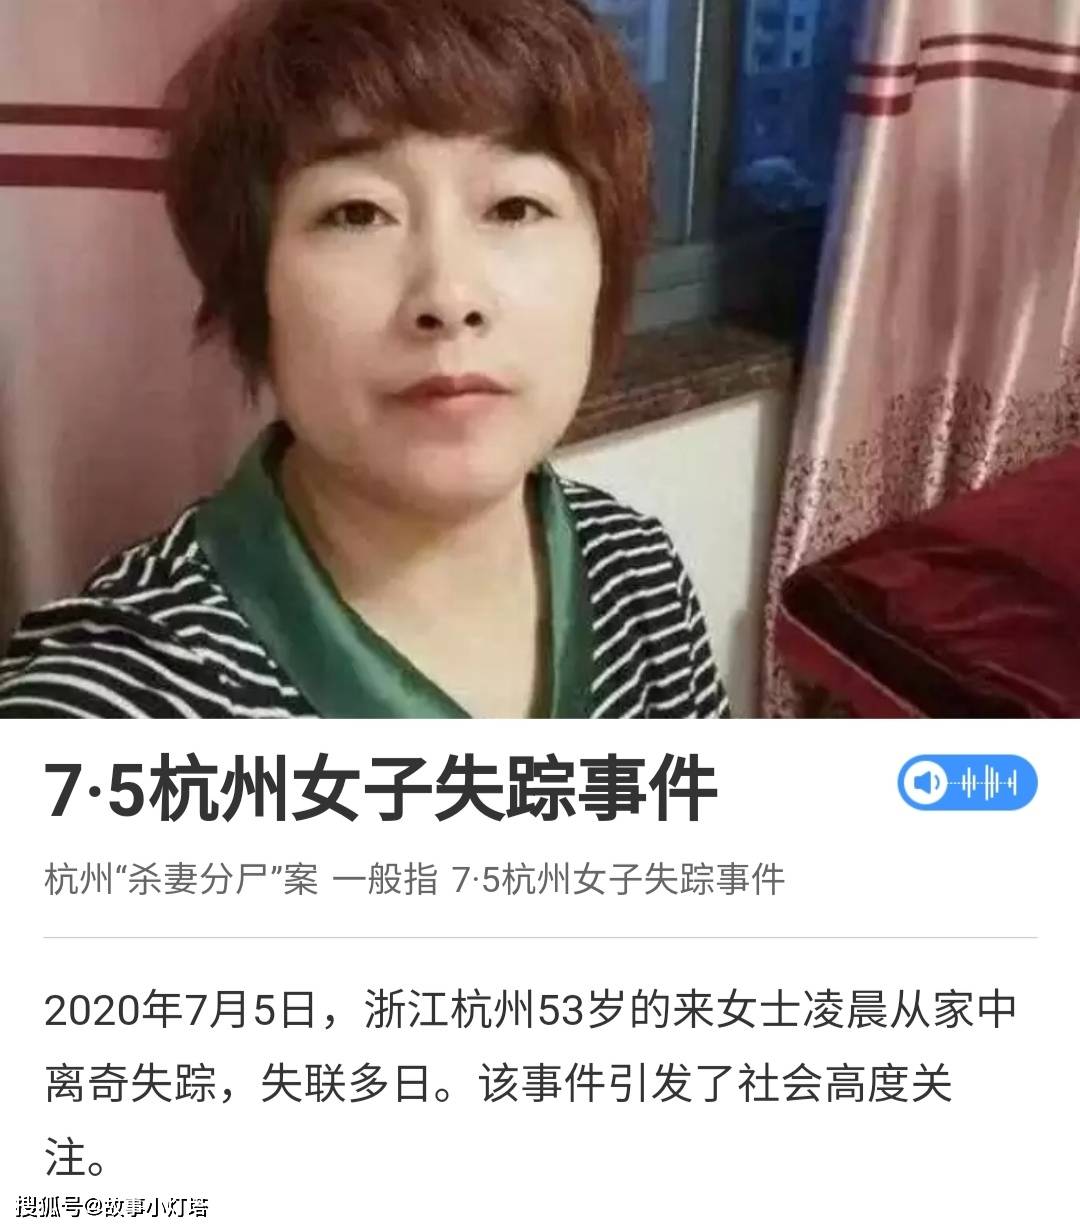 你猜到了杭州杀妻碎尸案的凶手但杭州纵火案就没那么简单了